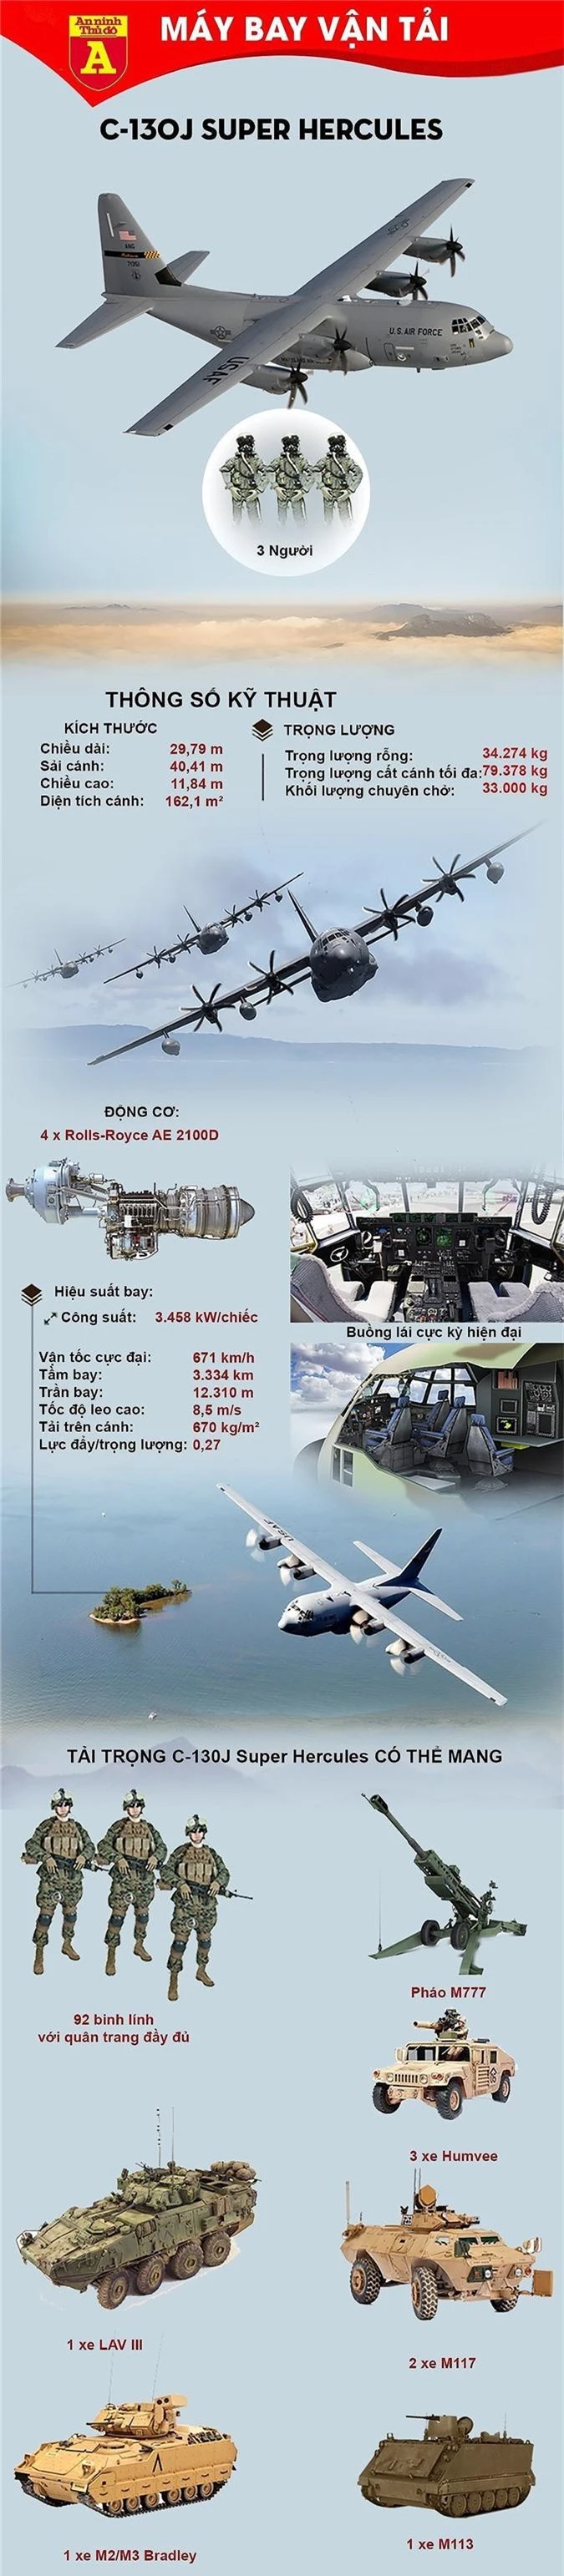 Máy bay C-130J